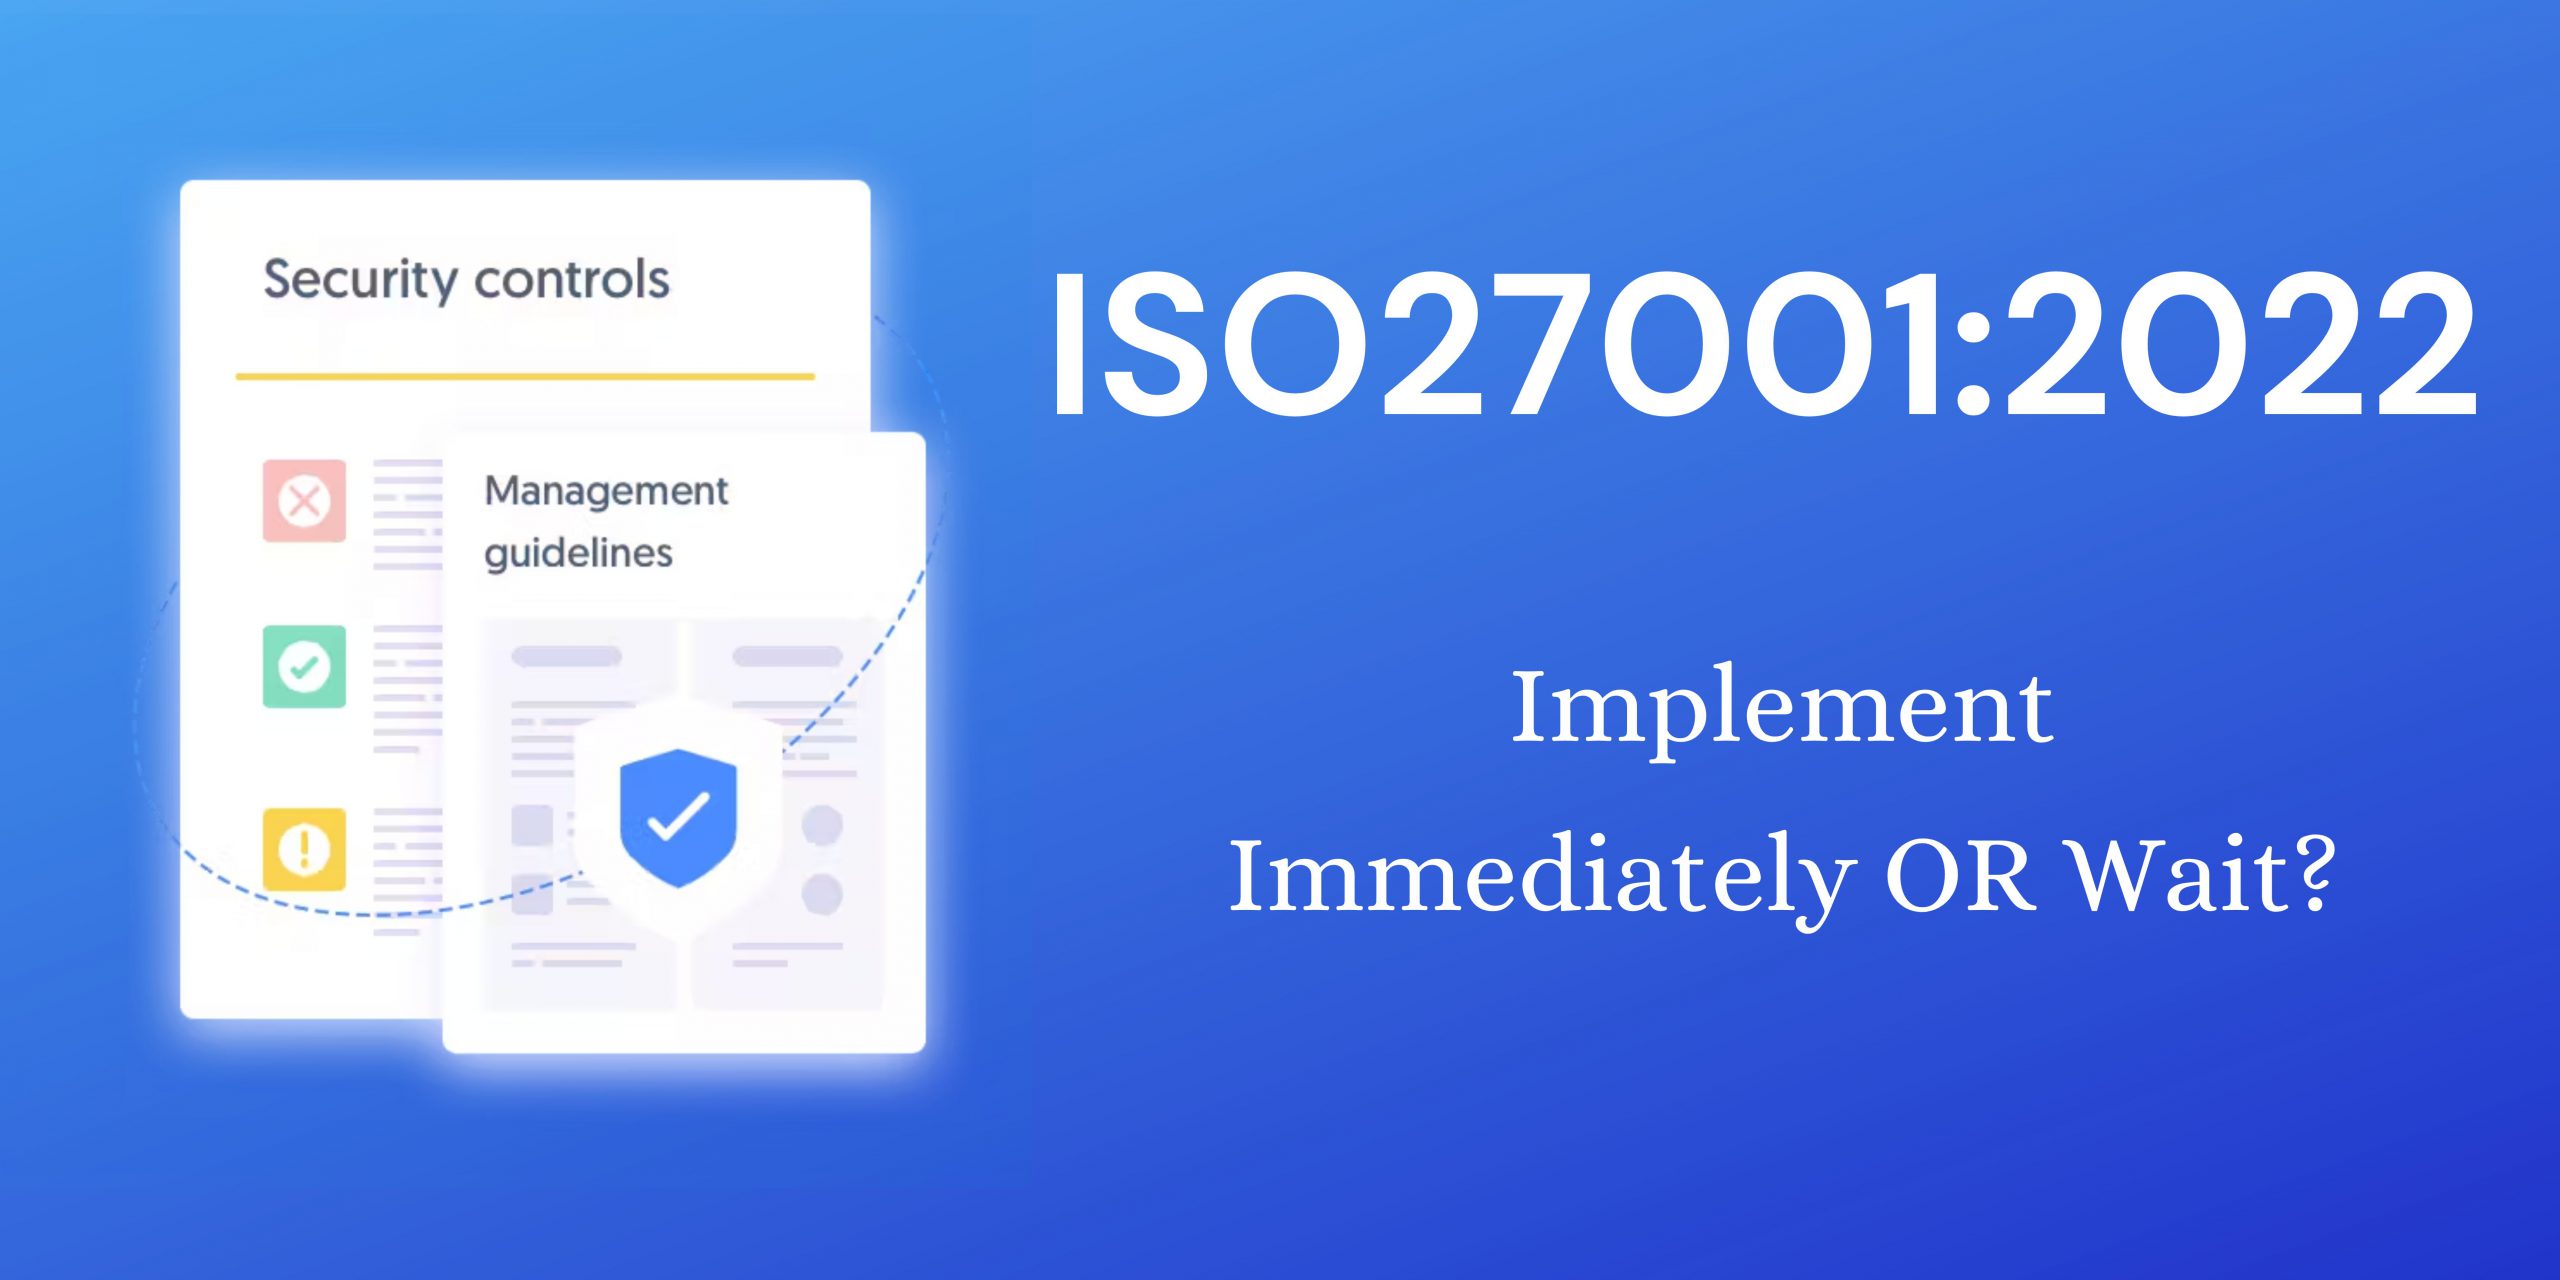 Go For ISO27001:2022 Immediately or Wait?